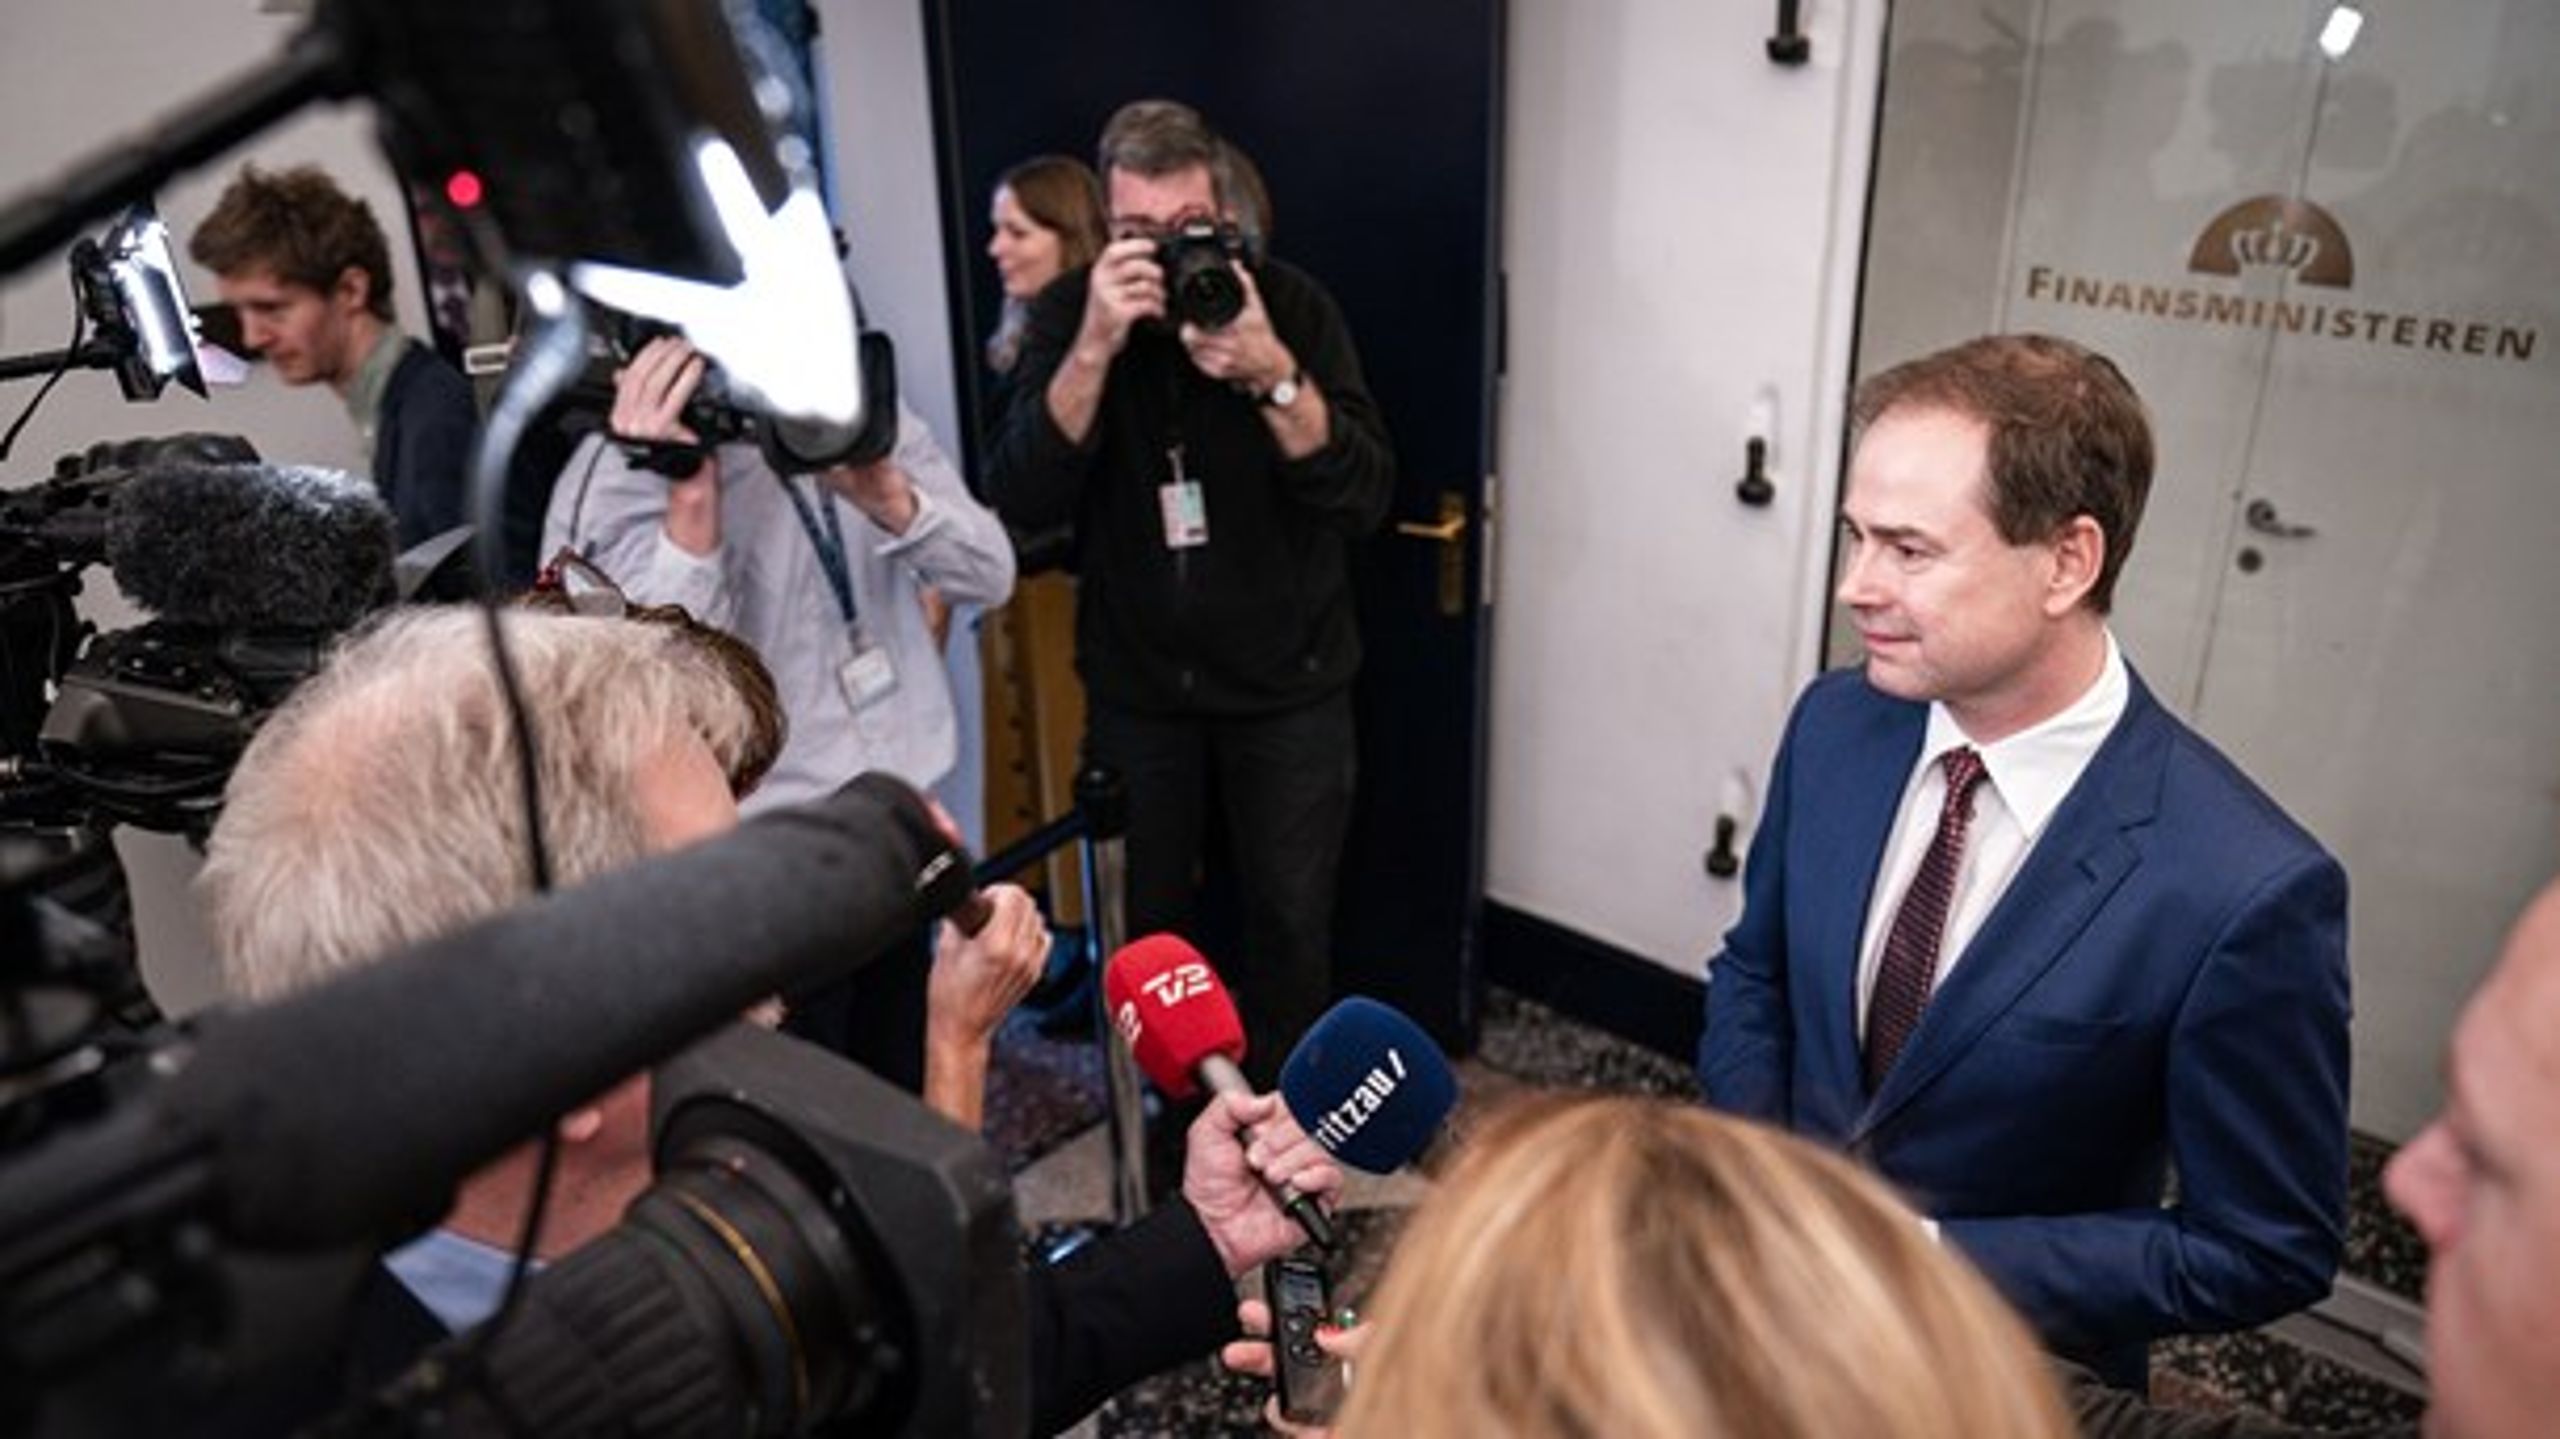 Finansminister Nicolai Wammen (S) har mistet sin pressechef, Sigga Nolsøe, som er fratrådt stillingen.